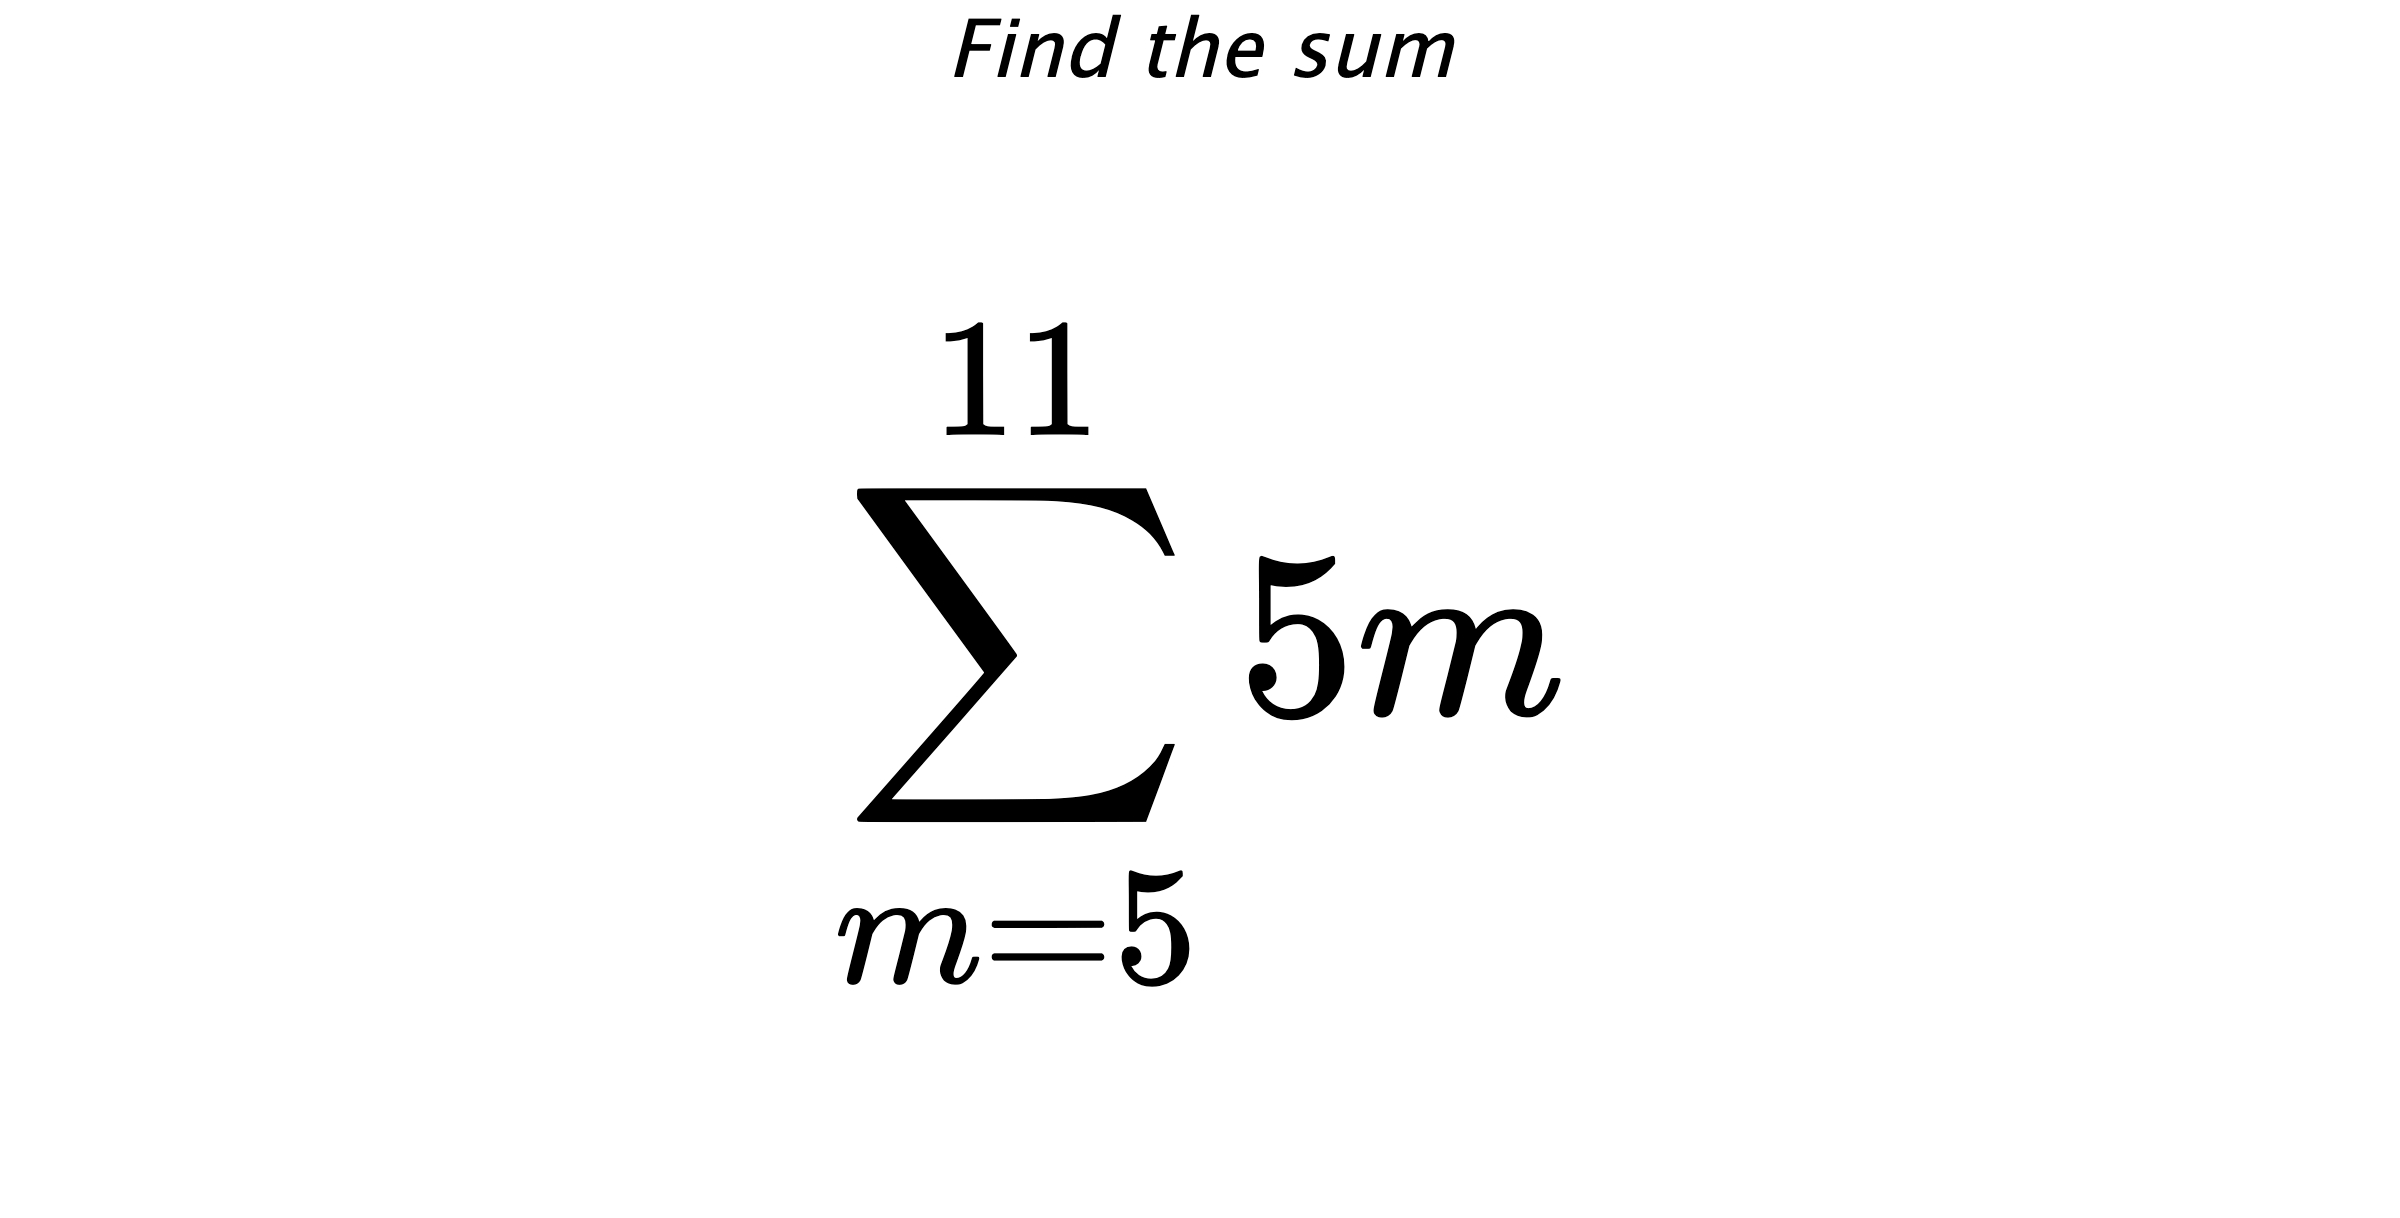 Find the sum $$ \sum_{m=5}^{11} 5m$$